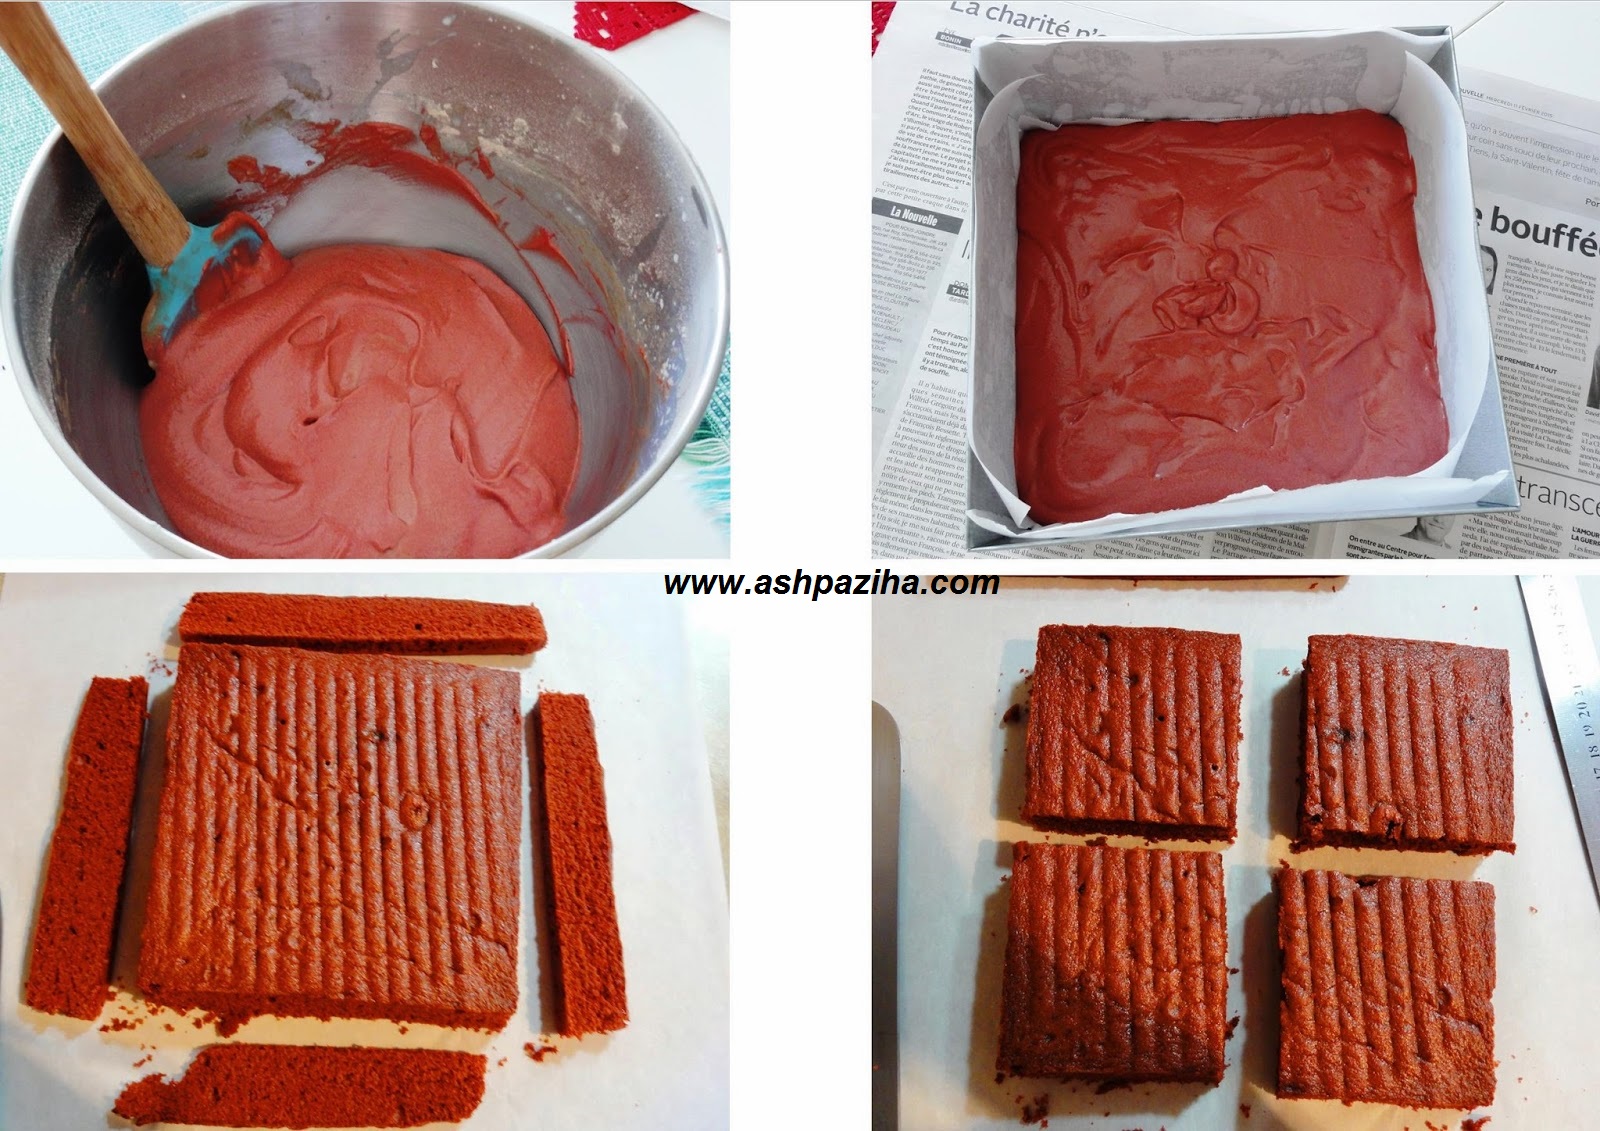 Mode - supplying - cake - red - velvet - with - cream (3)